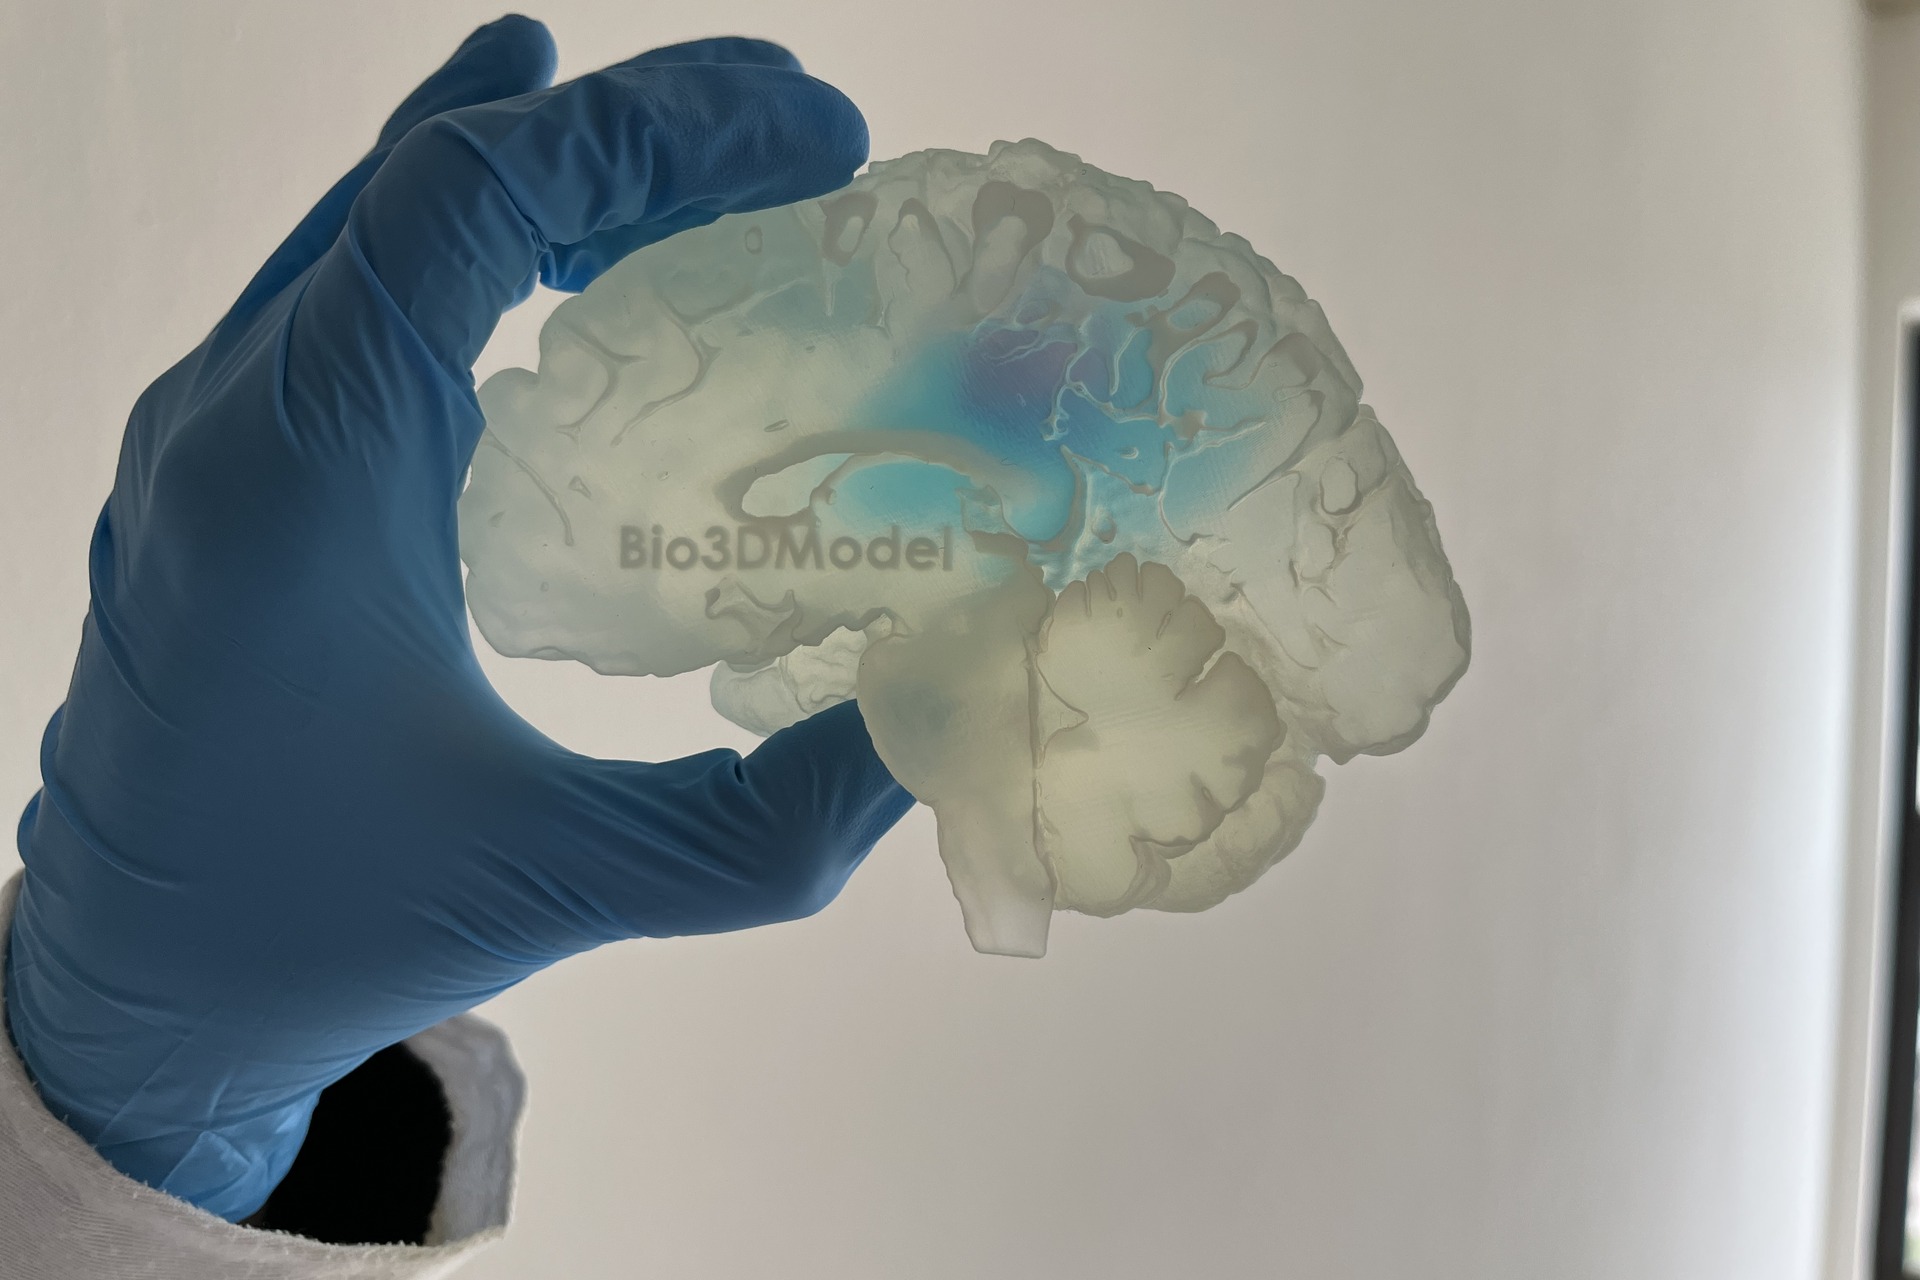 מוח אנושי: רבייה של מוח המושפע מגרורות והודפס בתלת מימד על ידי חברת Bio3DModel האיטלקית